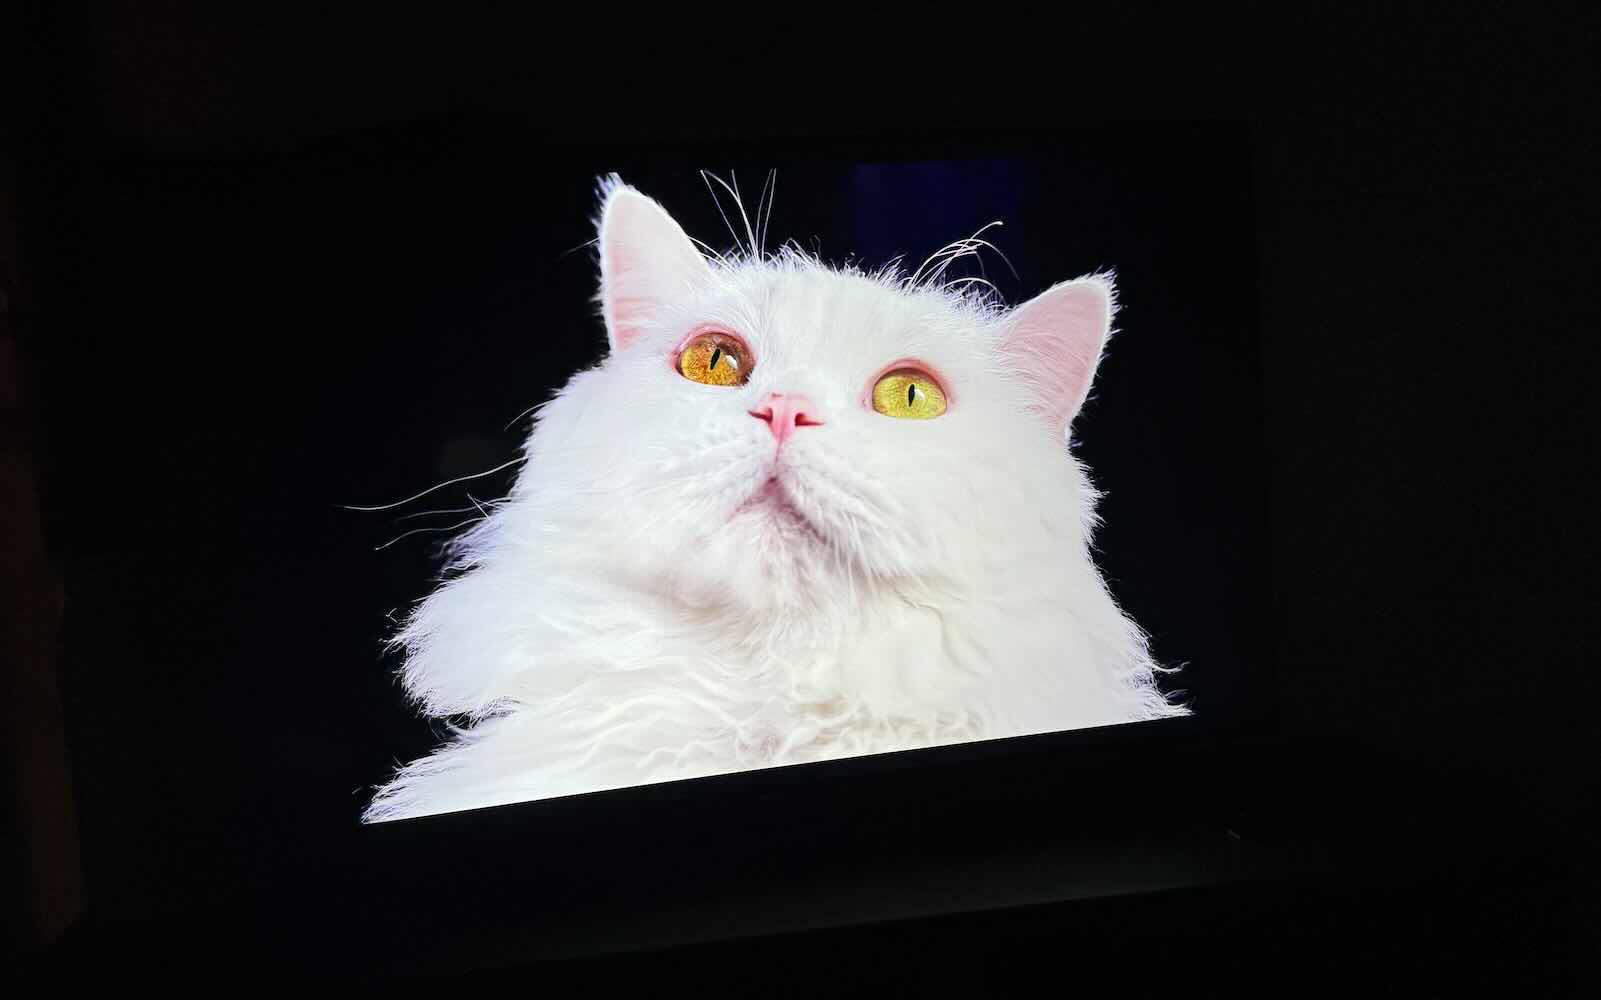 Hisense 4K Mini LED TV review